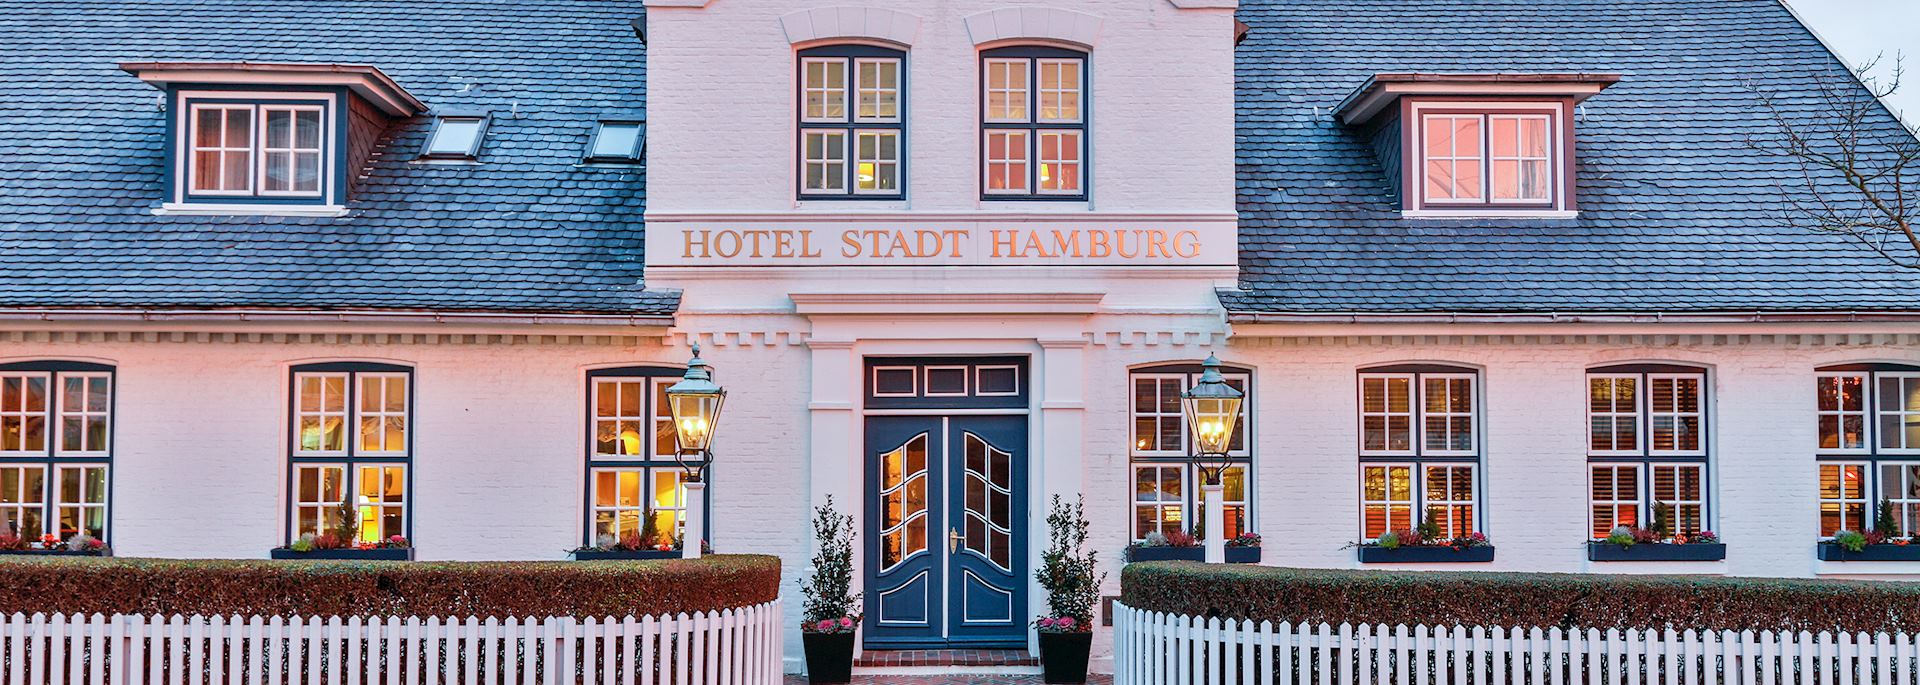 Hotel Stadt Hamburg, sylt